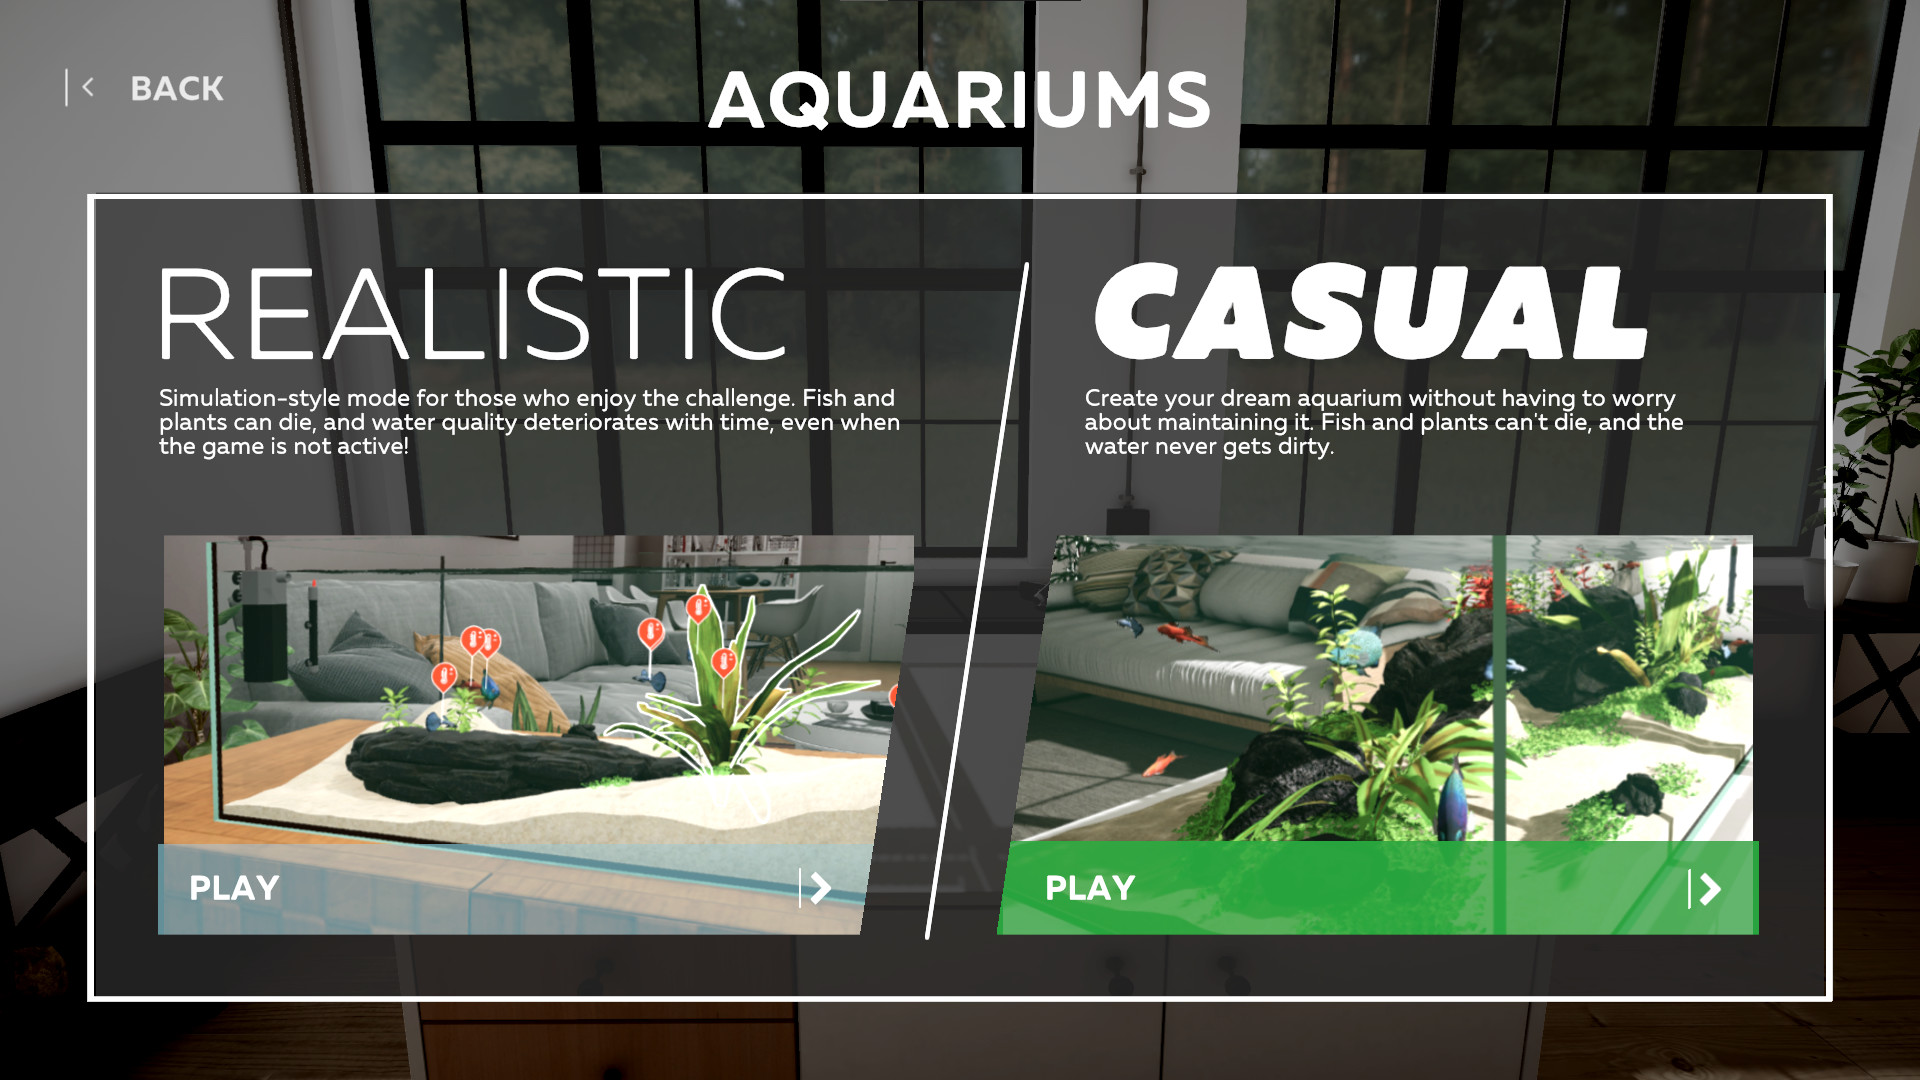 Aquarium Designer Steam Altergift